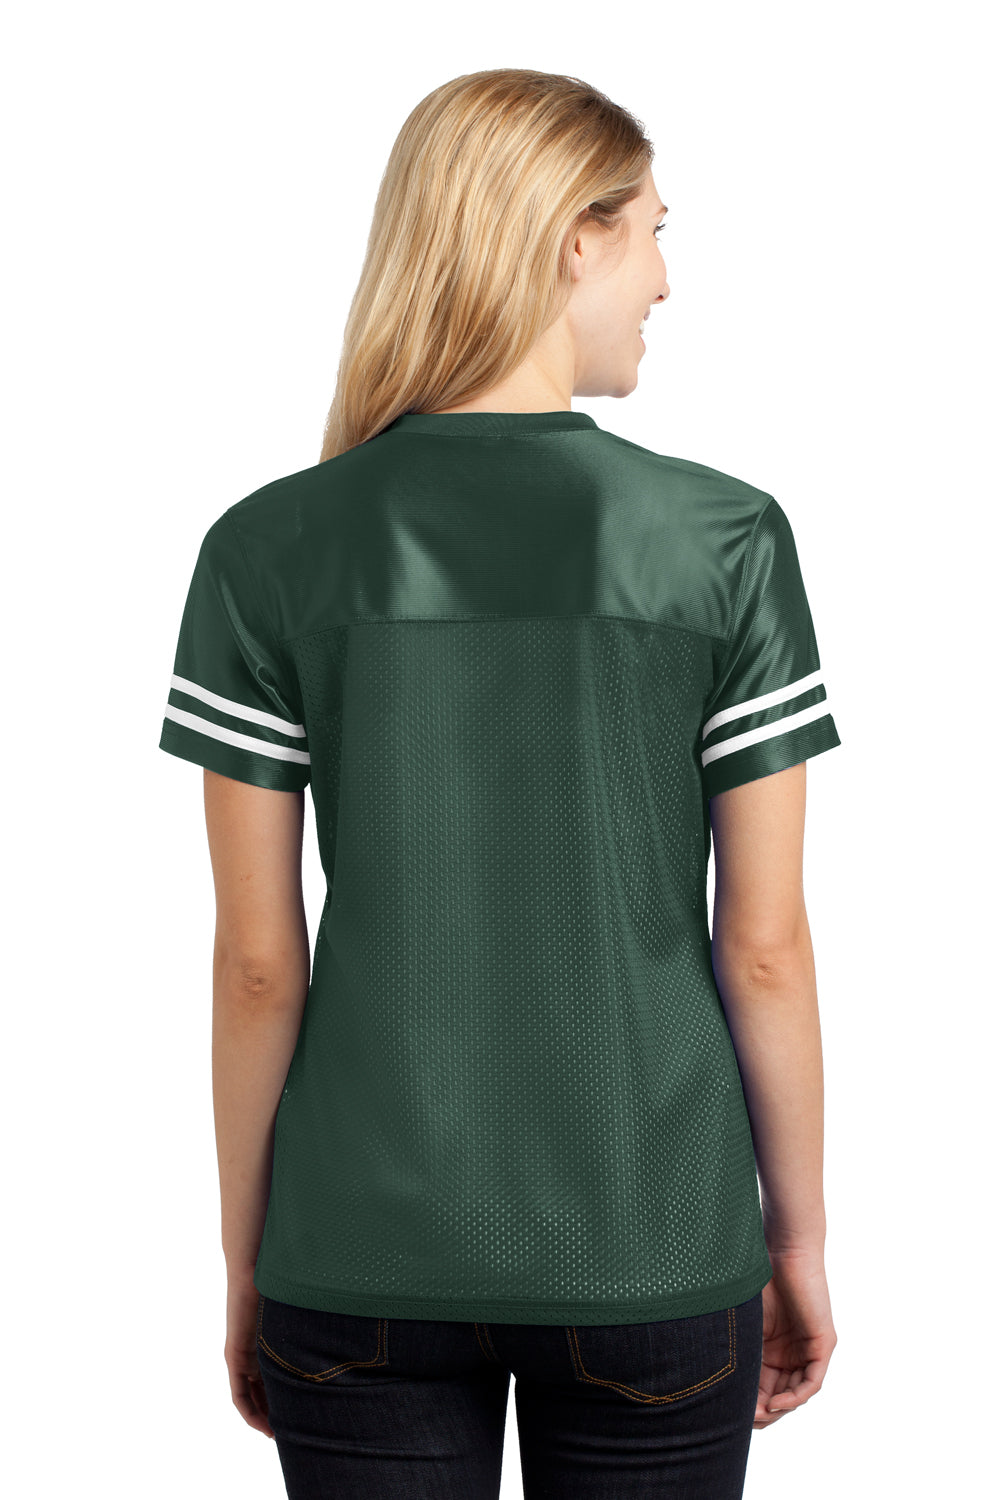 Sport-Tek LST307 Womens Short Sleeve V-Neck T-Shirt Forest Green Back